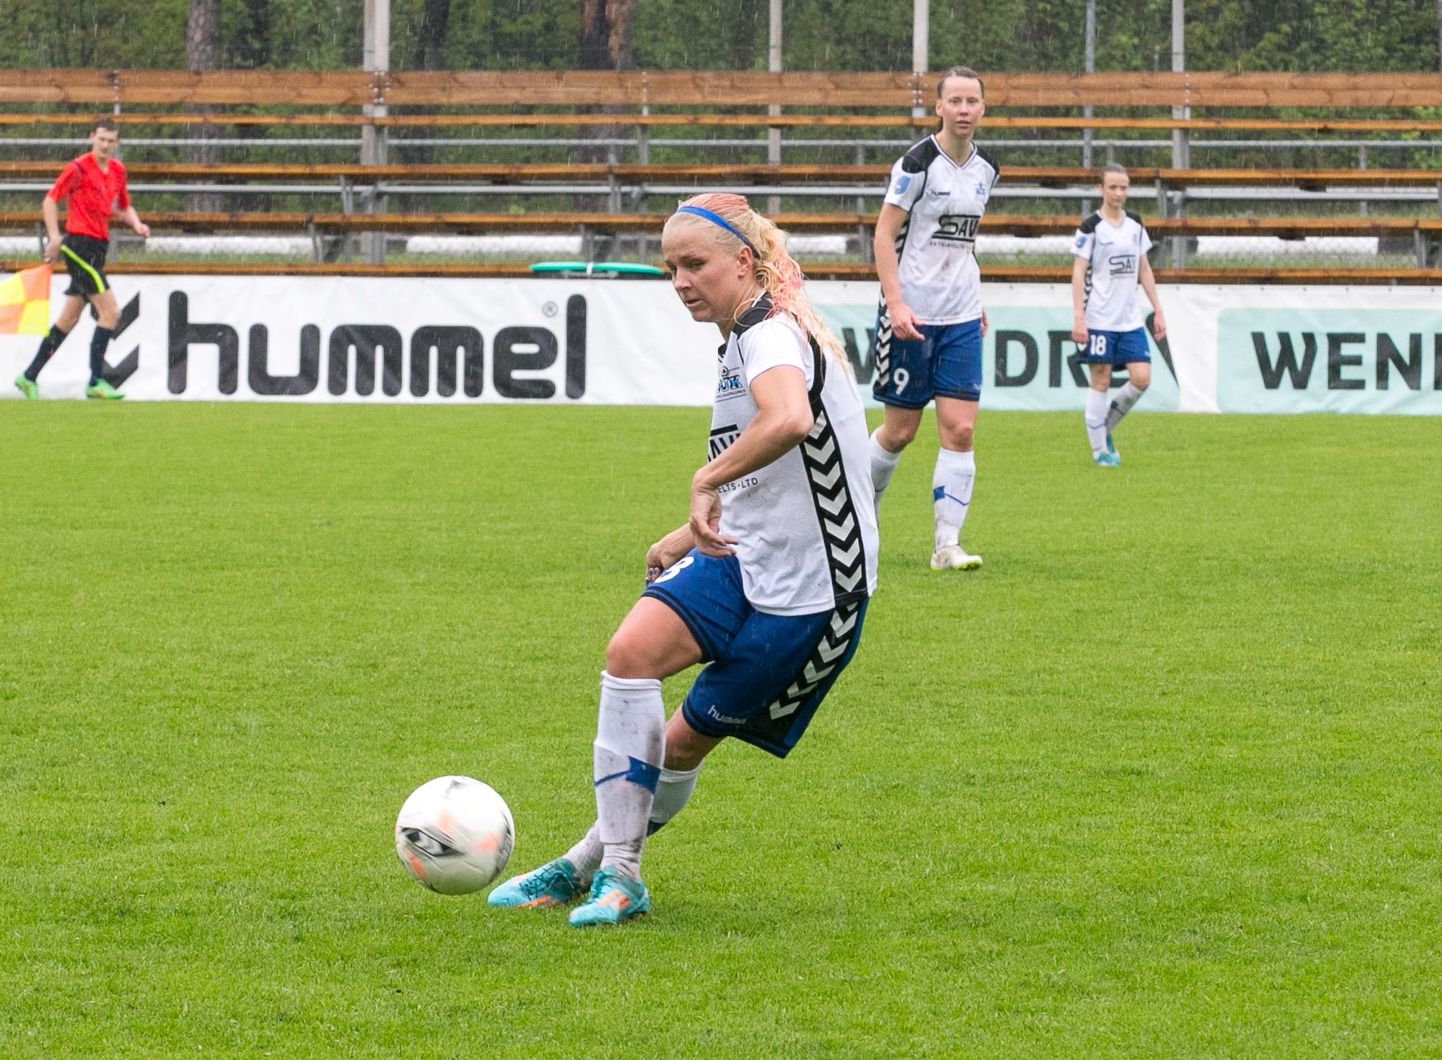 Eesti naiste jalgpallimeistrivõistlused on jõudnud otsustavasse faasi ja laupäeval Pärnu Rannastaadionil toimuva mänguga avaneb Pärnu jalgpalliklubi naiskonnal võimalus astuda suur samm järjekordse tiitli suunas.